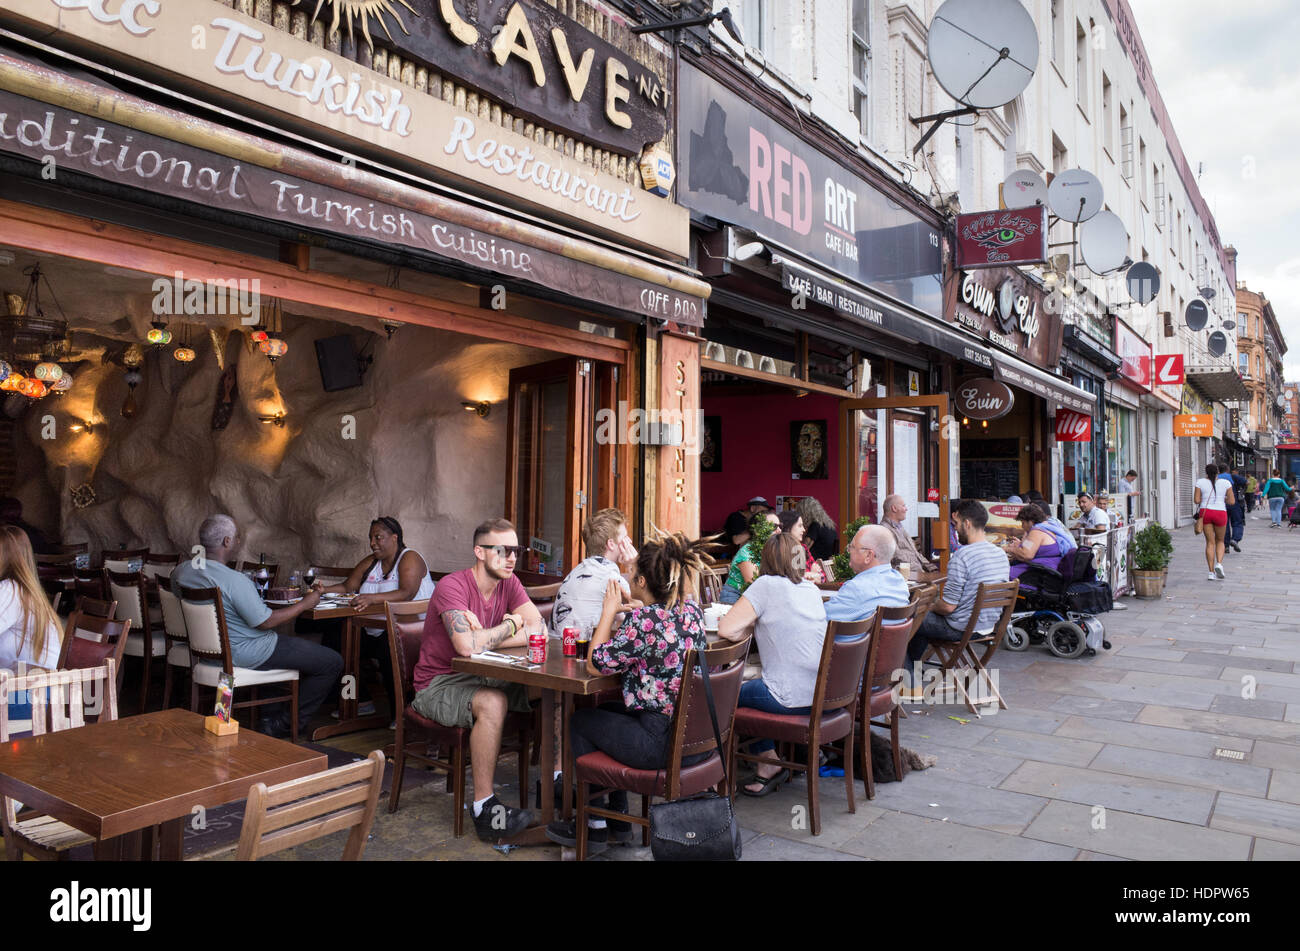 Les gens assis à des tables de cafés et restaurants sur Kingsland High Street, Dalston, Hackney, Londres, Angleterre, RU Banque D'Images